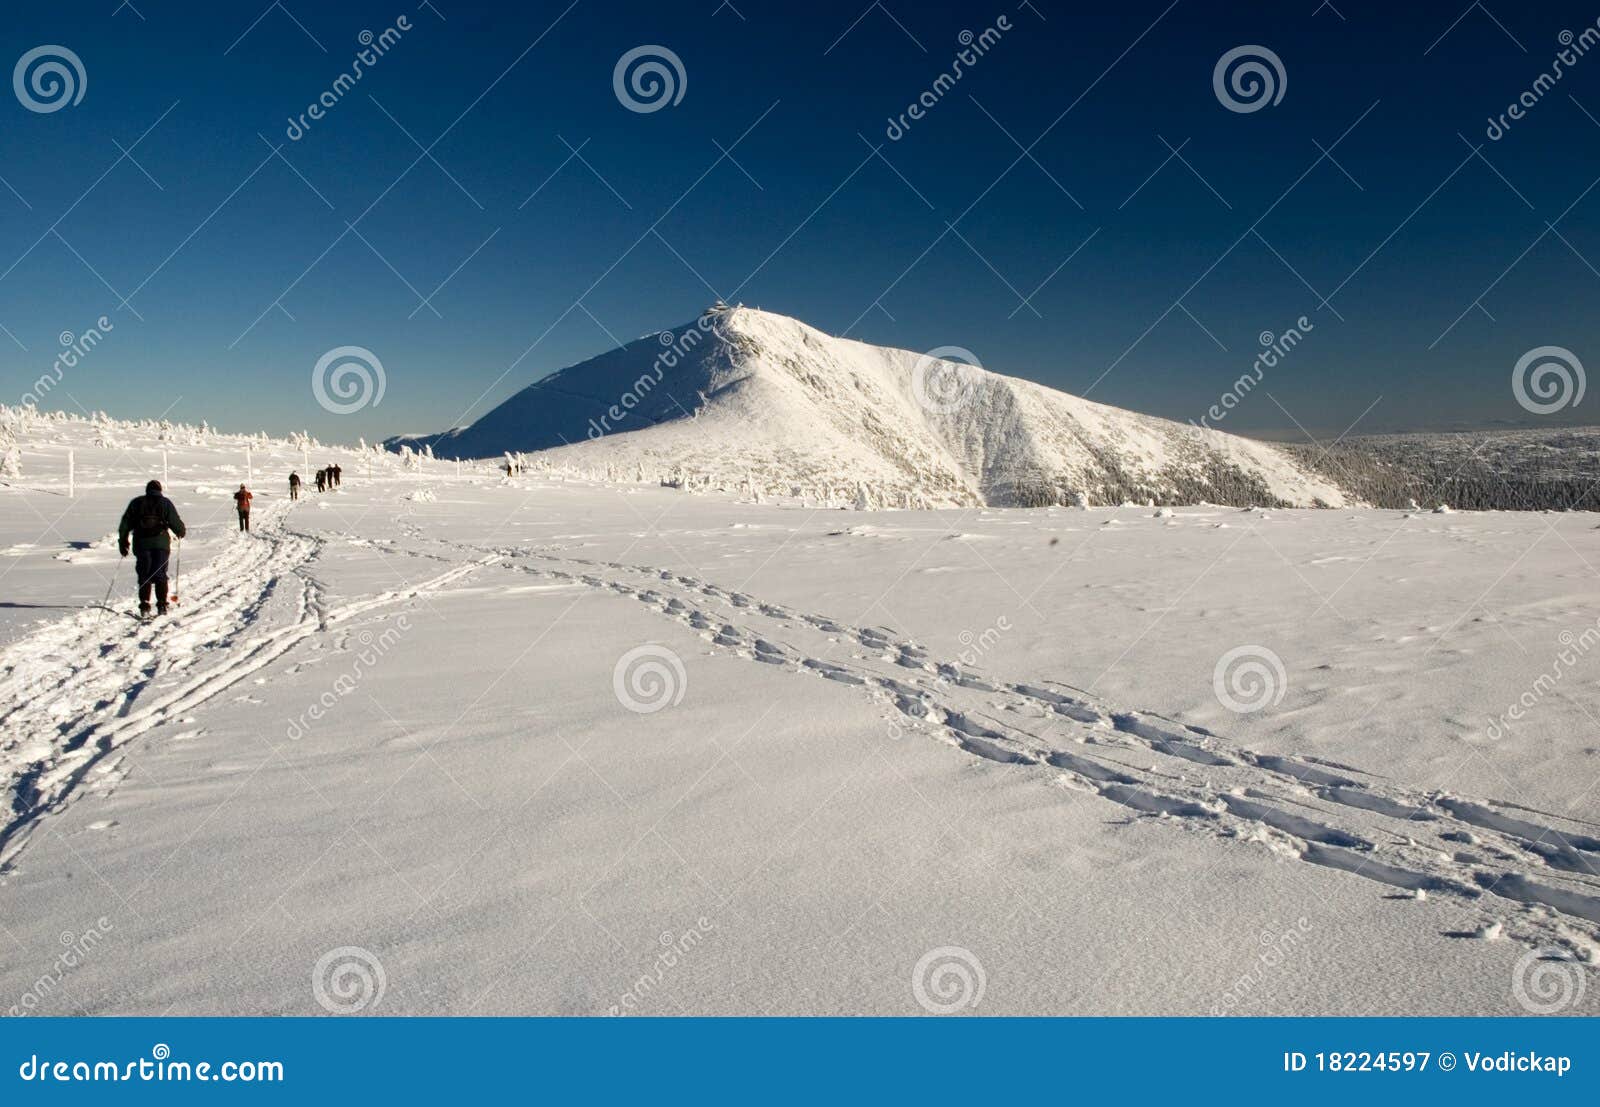 winter skiing trek